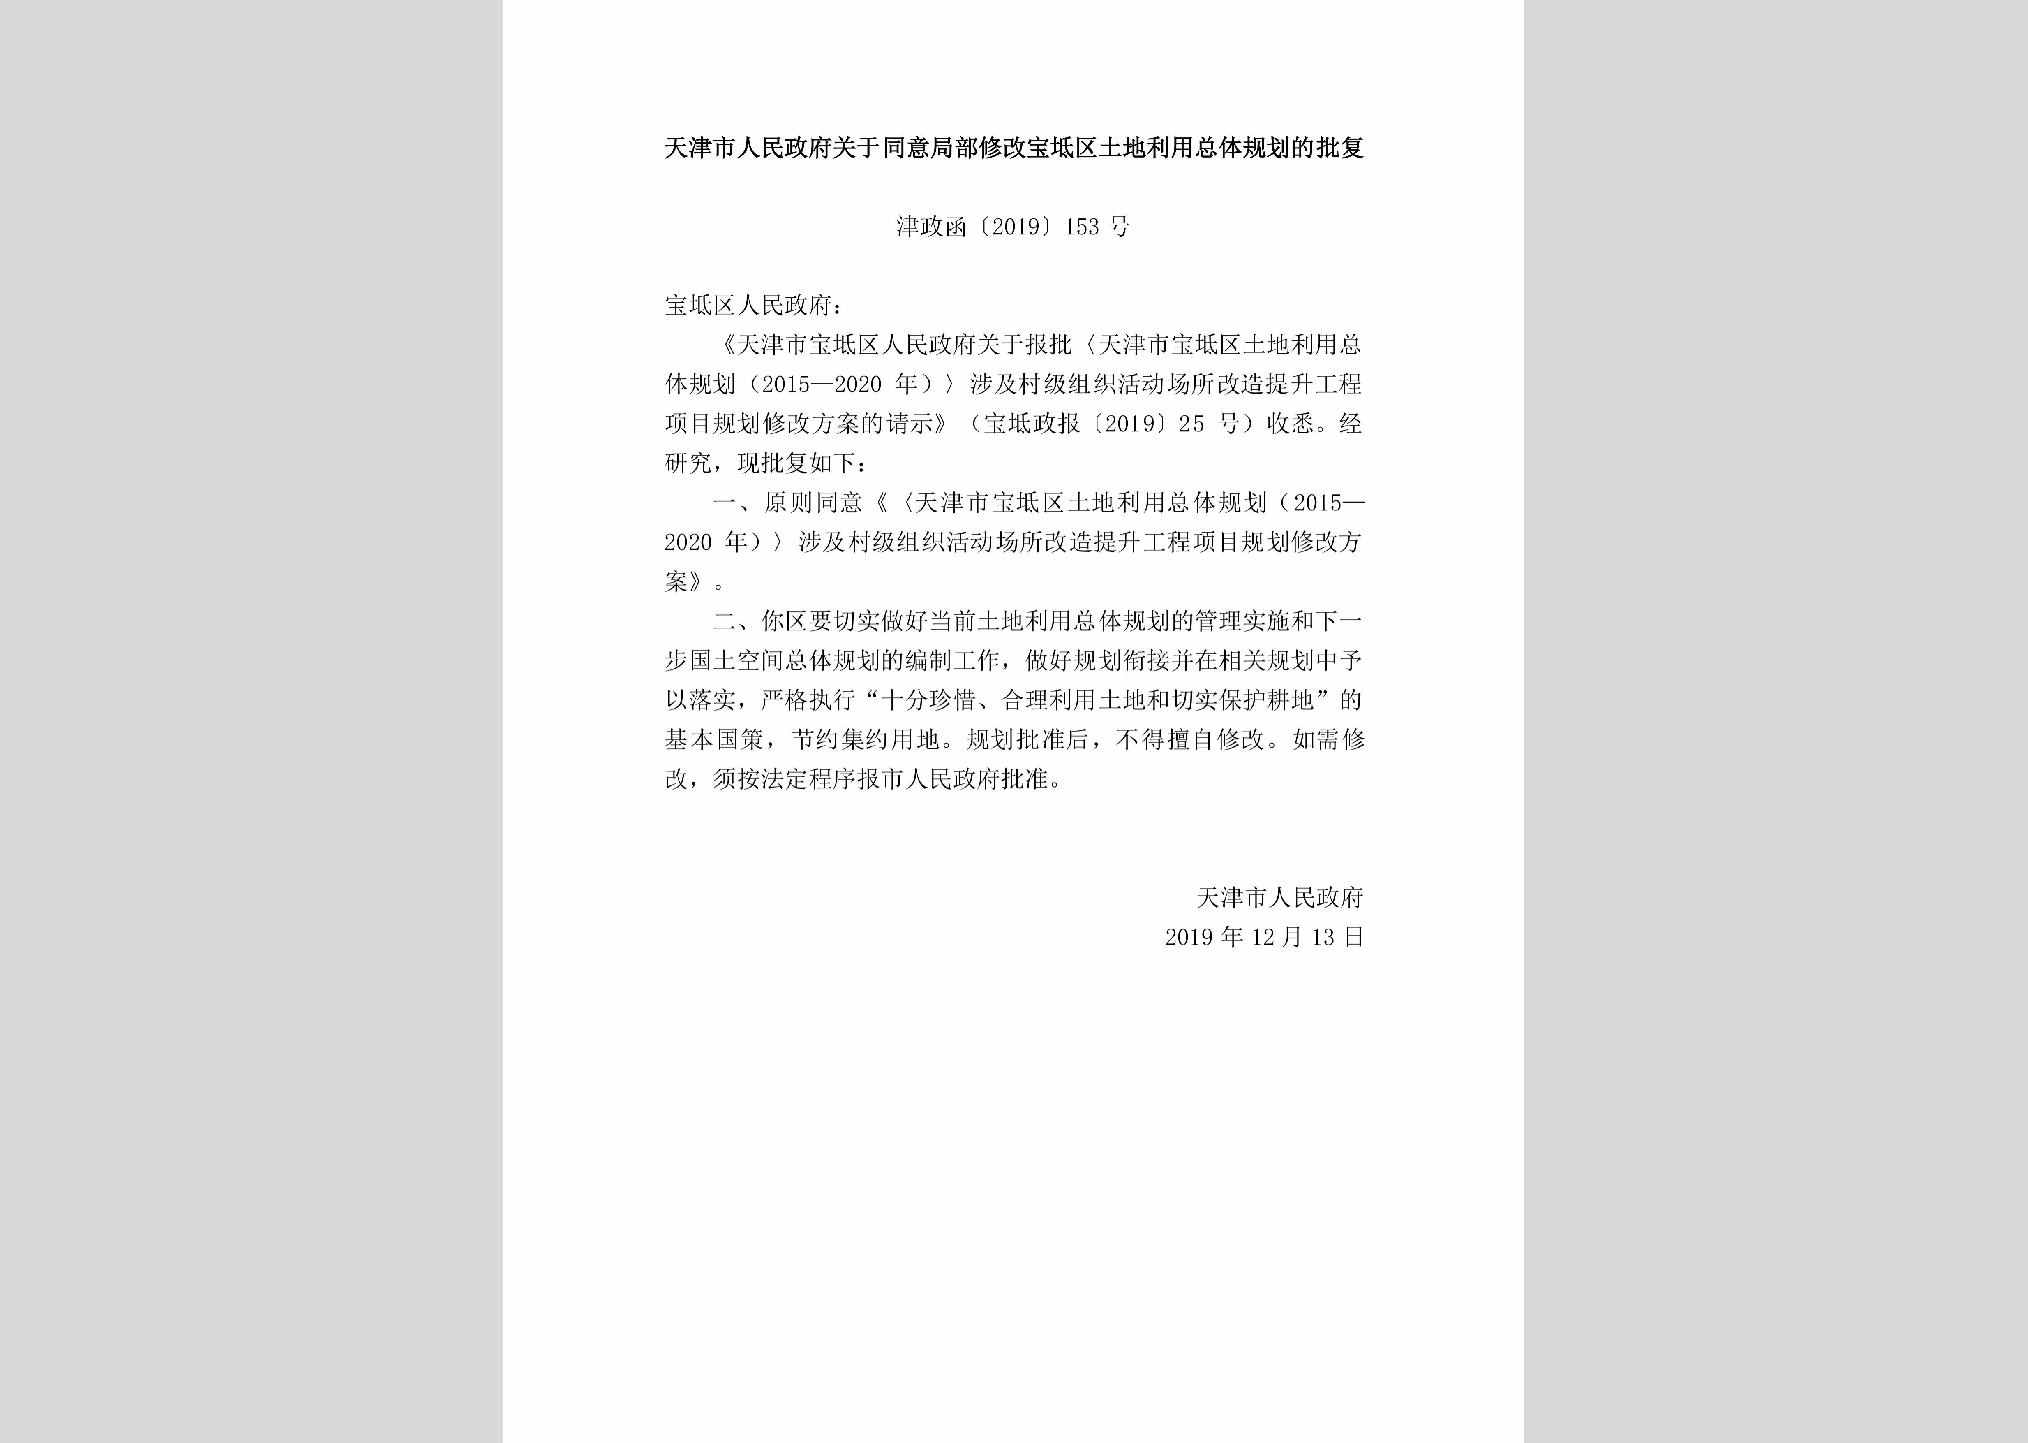 津政函[2019]153号：天津市人民政府关于同意局部修改宝坻区土地利用总体规划的批复